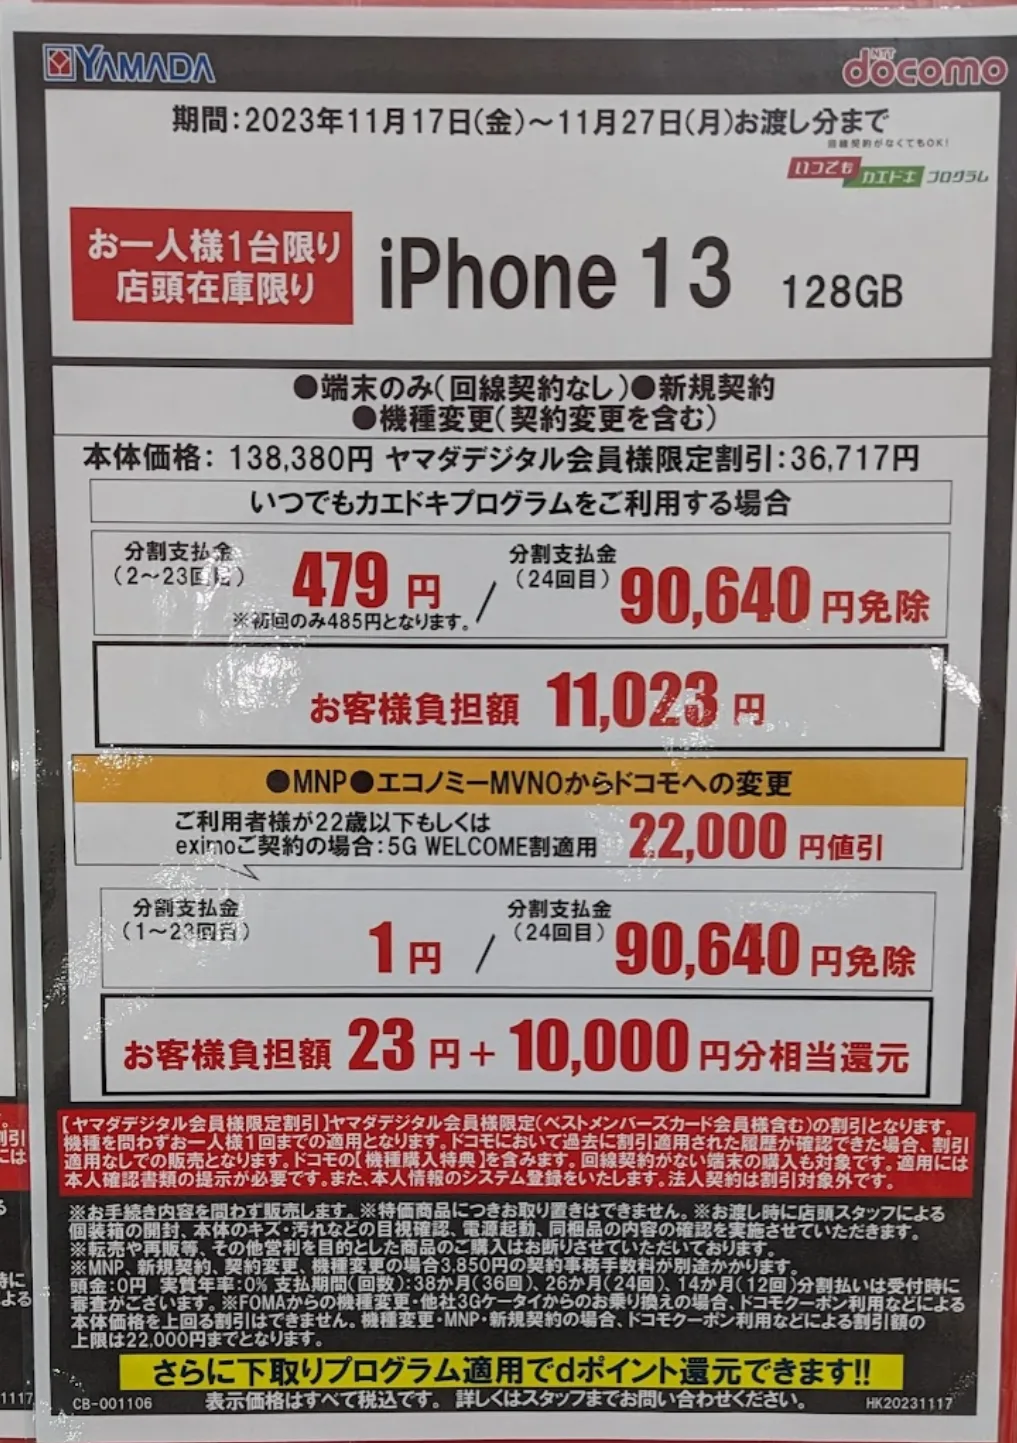 ヤマダ電機「iPhone 13」がMNPで実質1円と現金10,000円で投げ売り